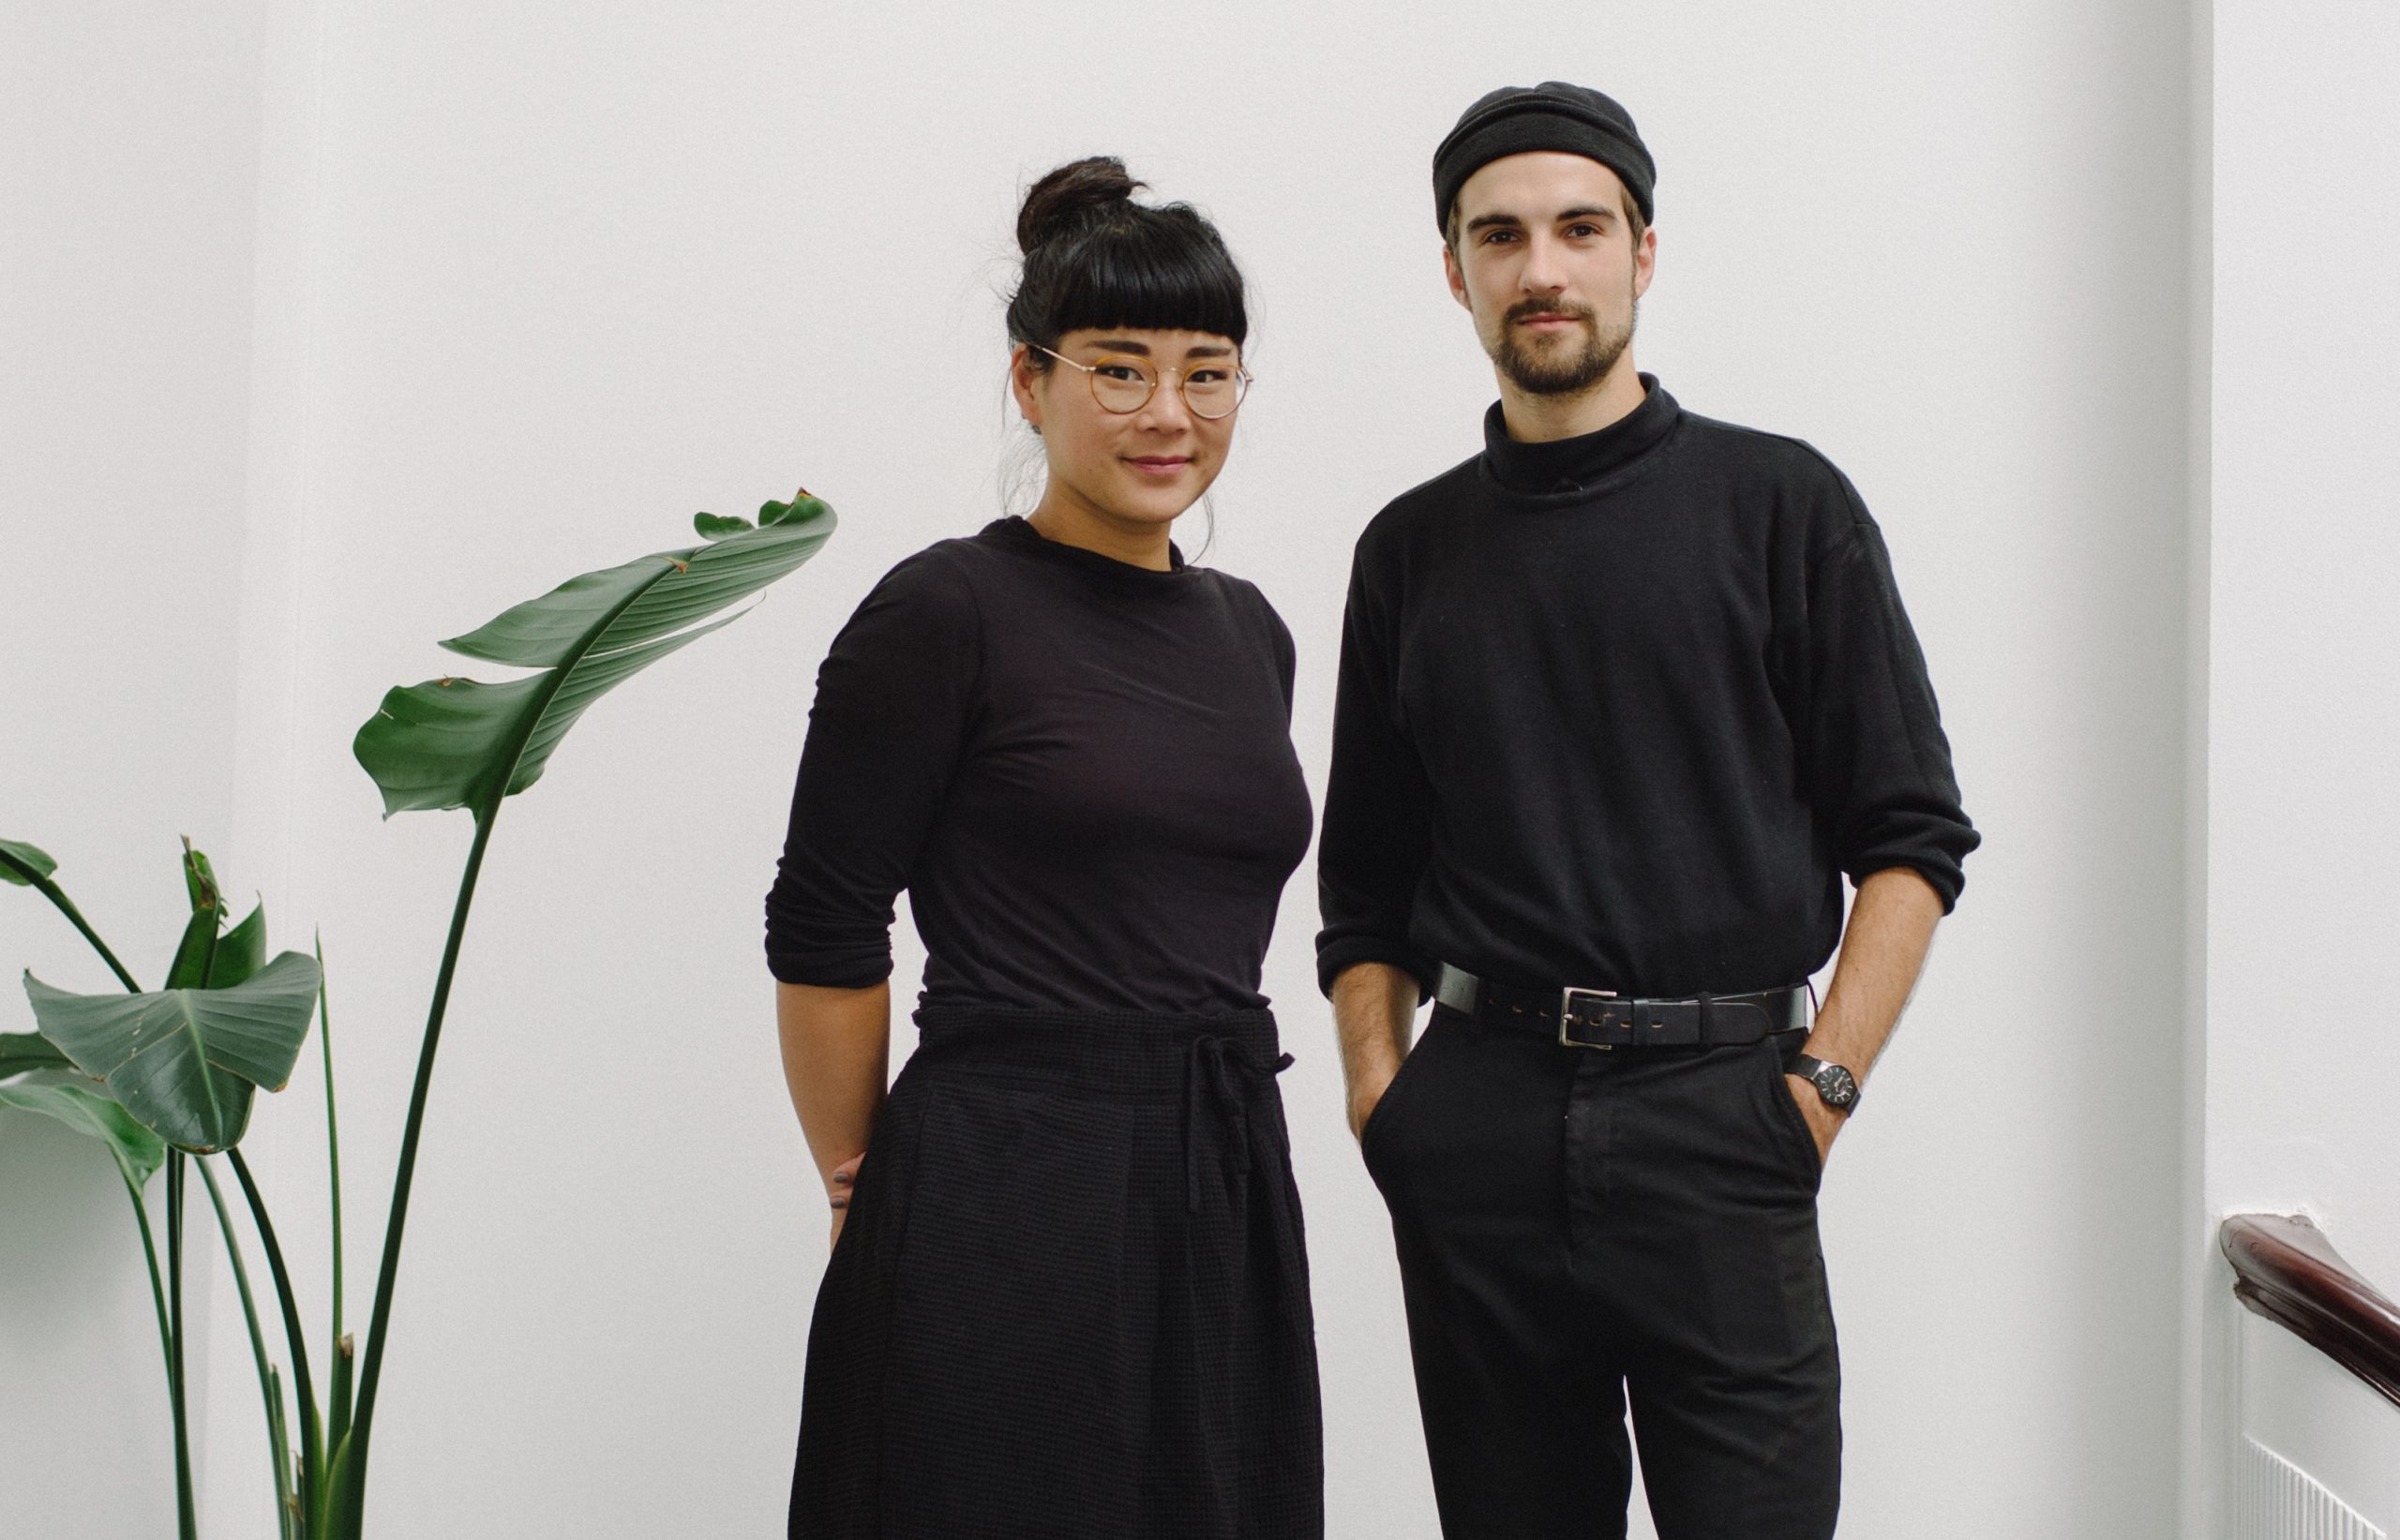 Rhoda Ting og Mikkel Dahlin Bojesen ikledd svarte gensere. Grønn plante til venstre i bildet. Rhoda har på seg briller og Mikkelø en svart lue.